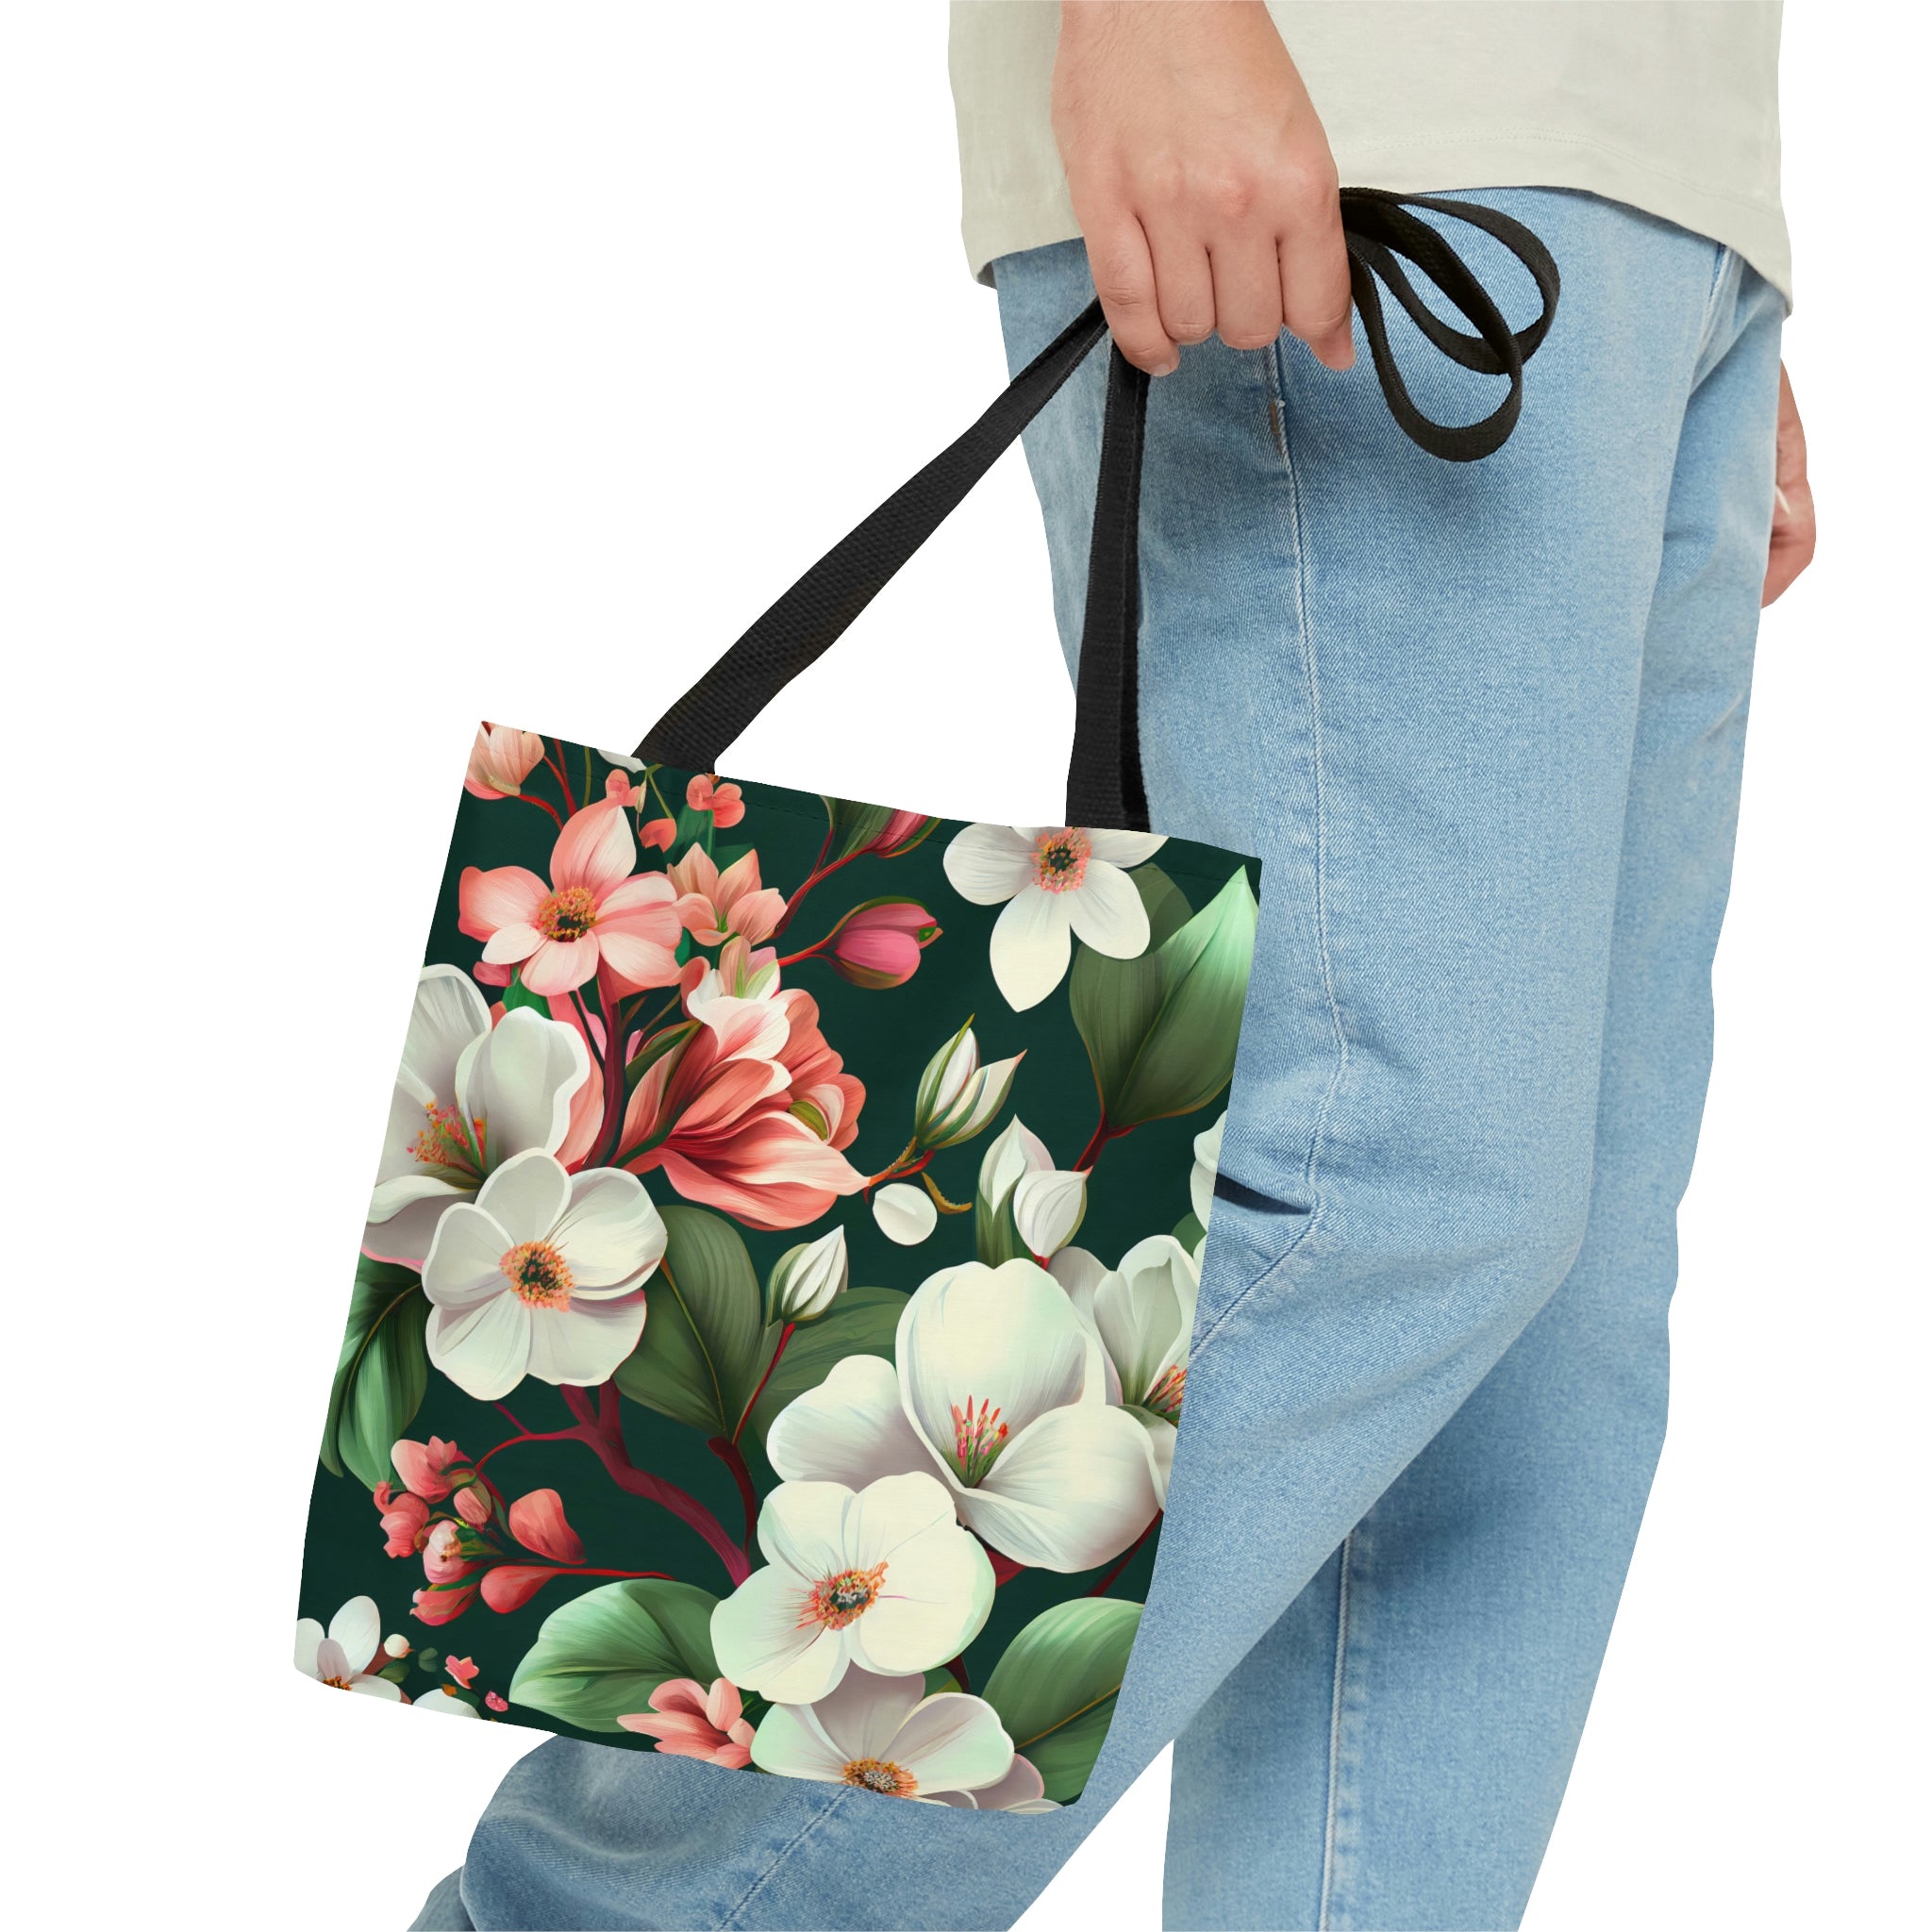 Bloomin' Flower Tote Bag